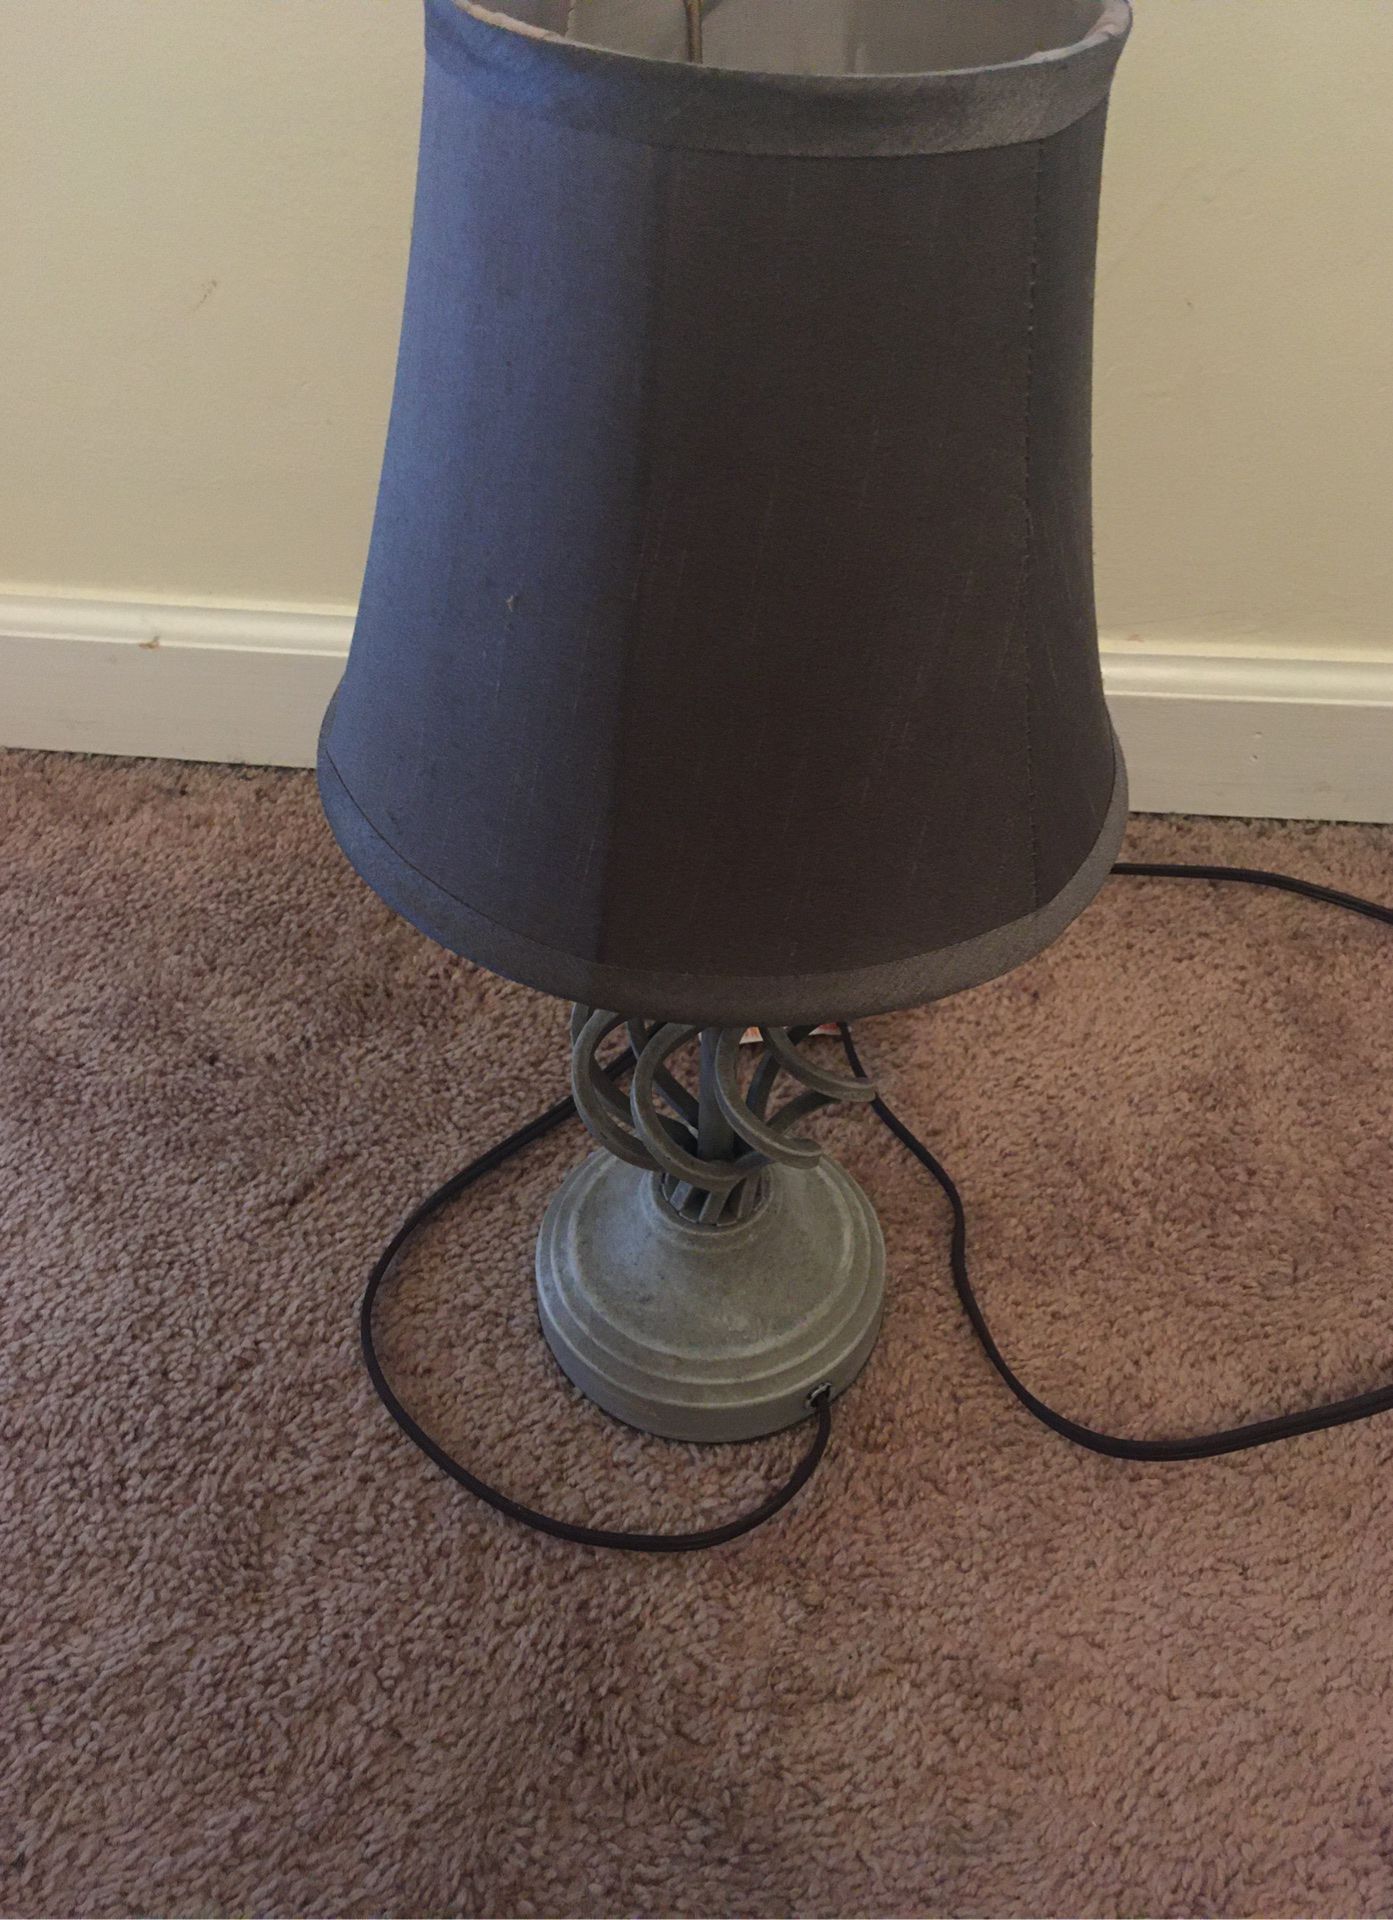 Grey Lamp